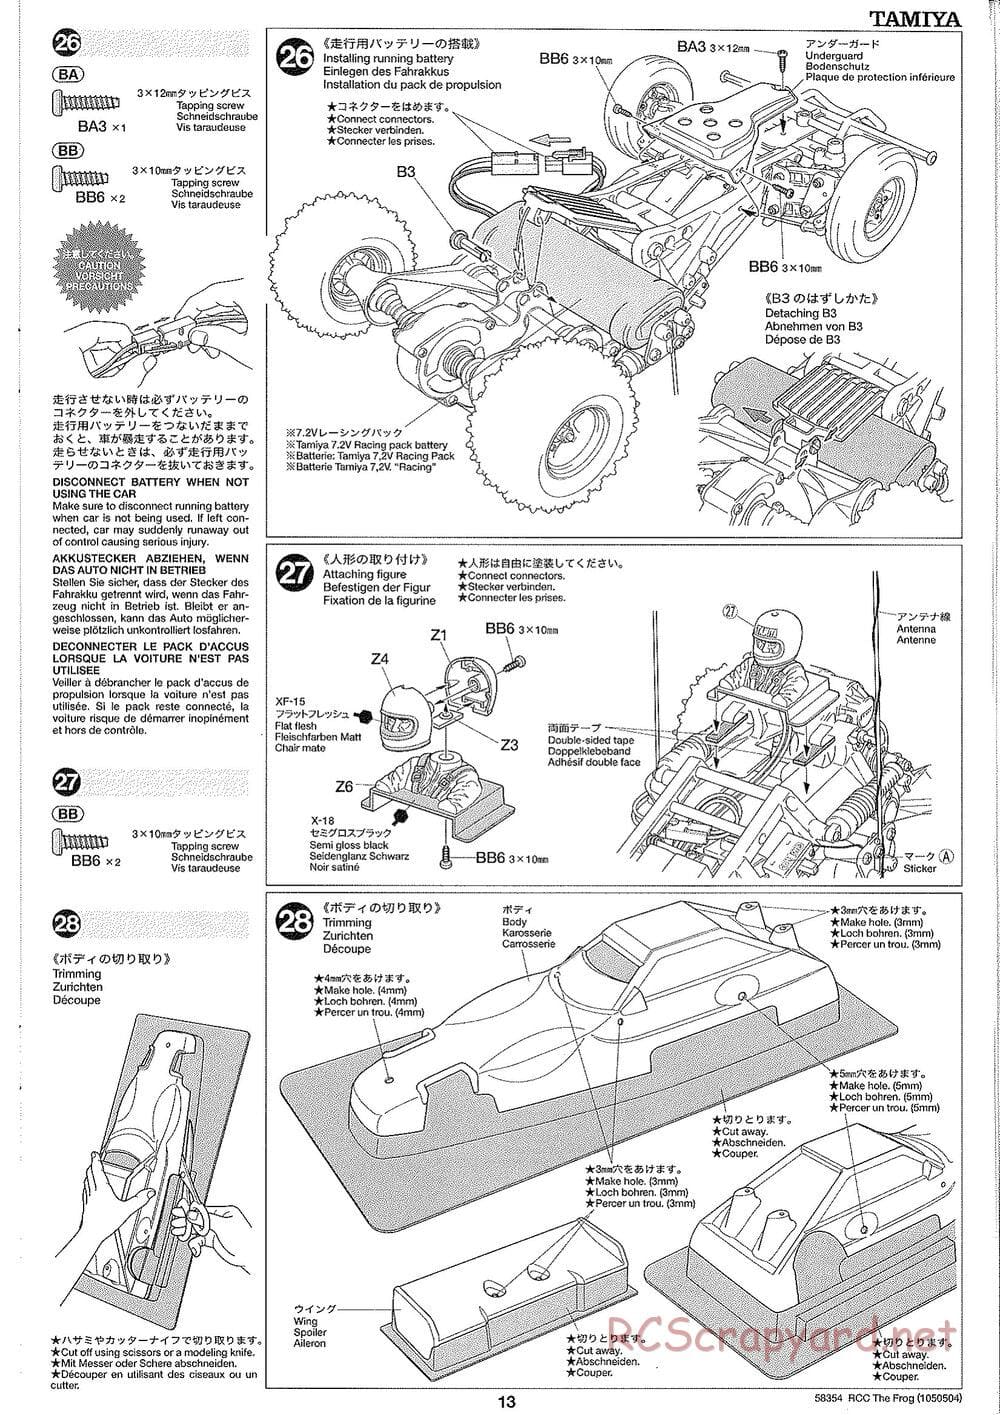 Tamiya - The Frog - 2005 - ORV Chassis - Manual - Page 13